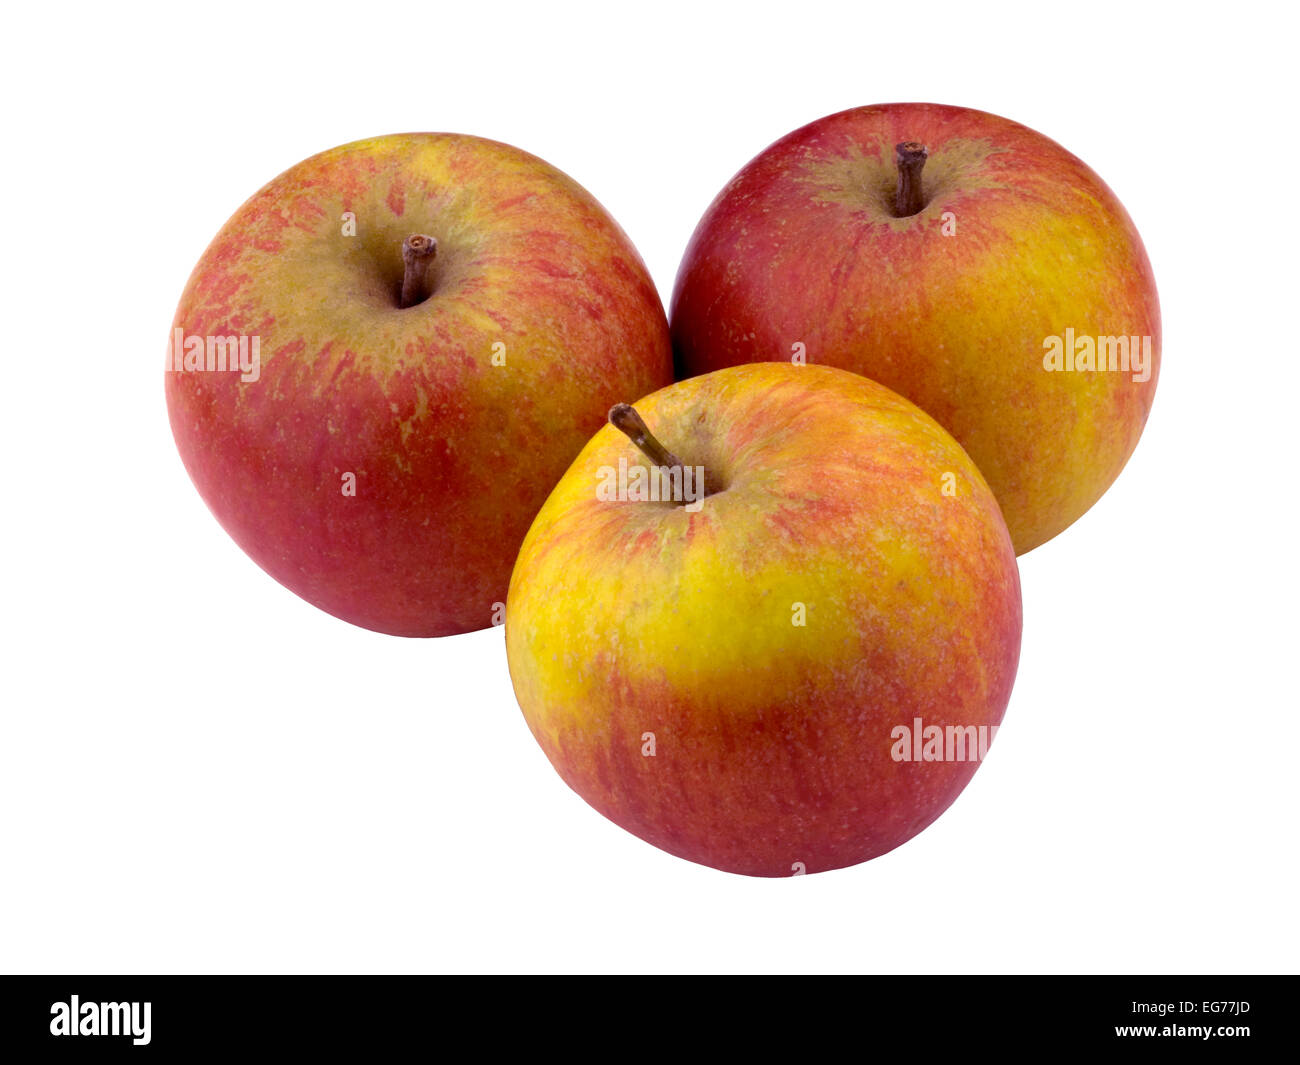 apples, Cox Stock Photo